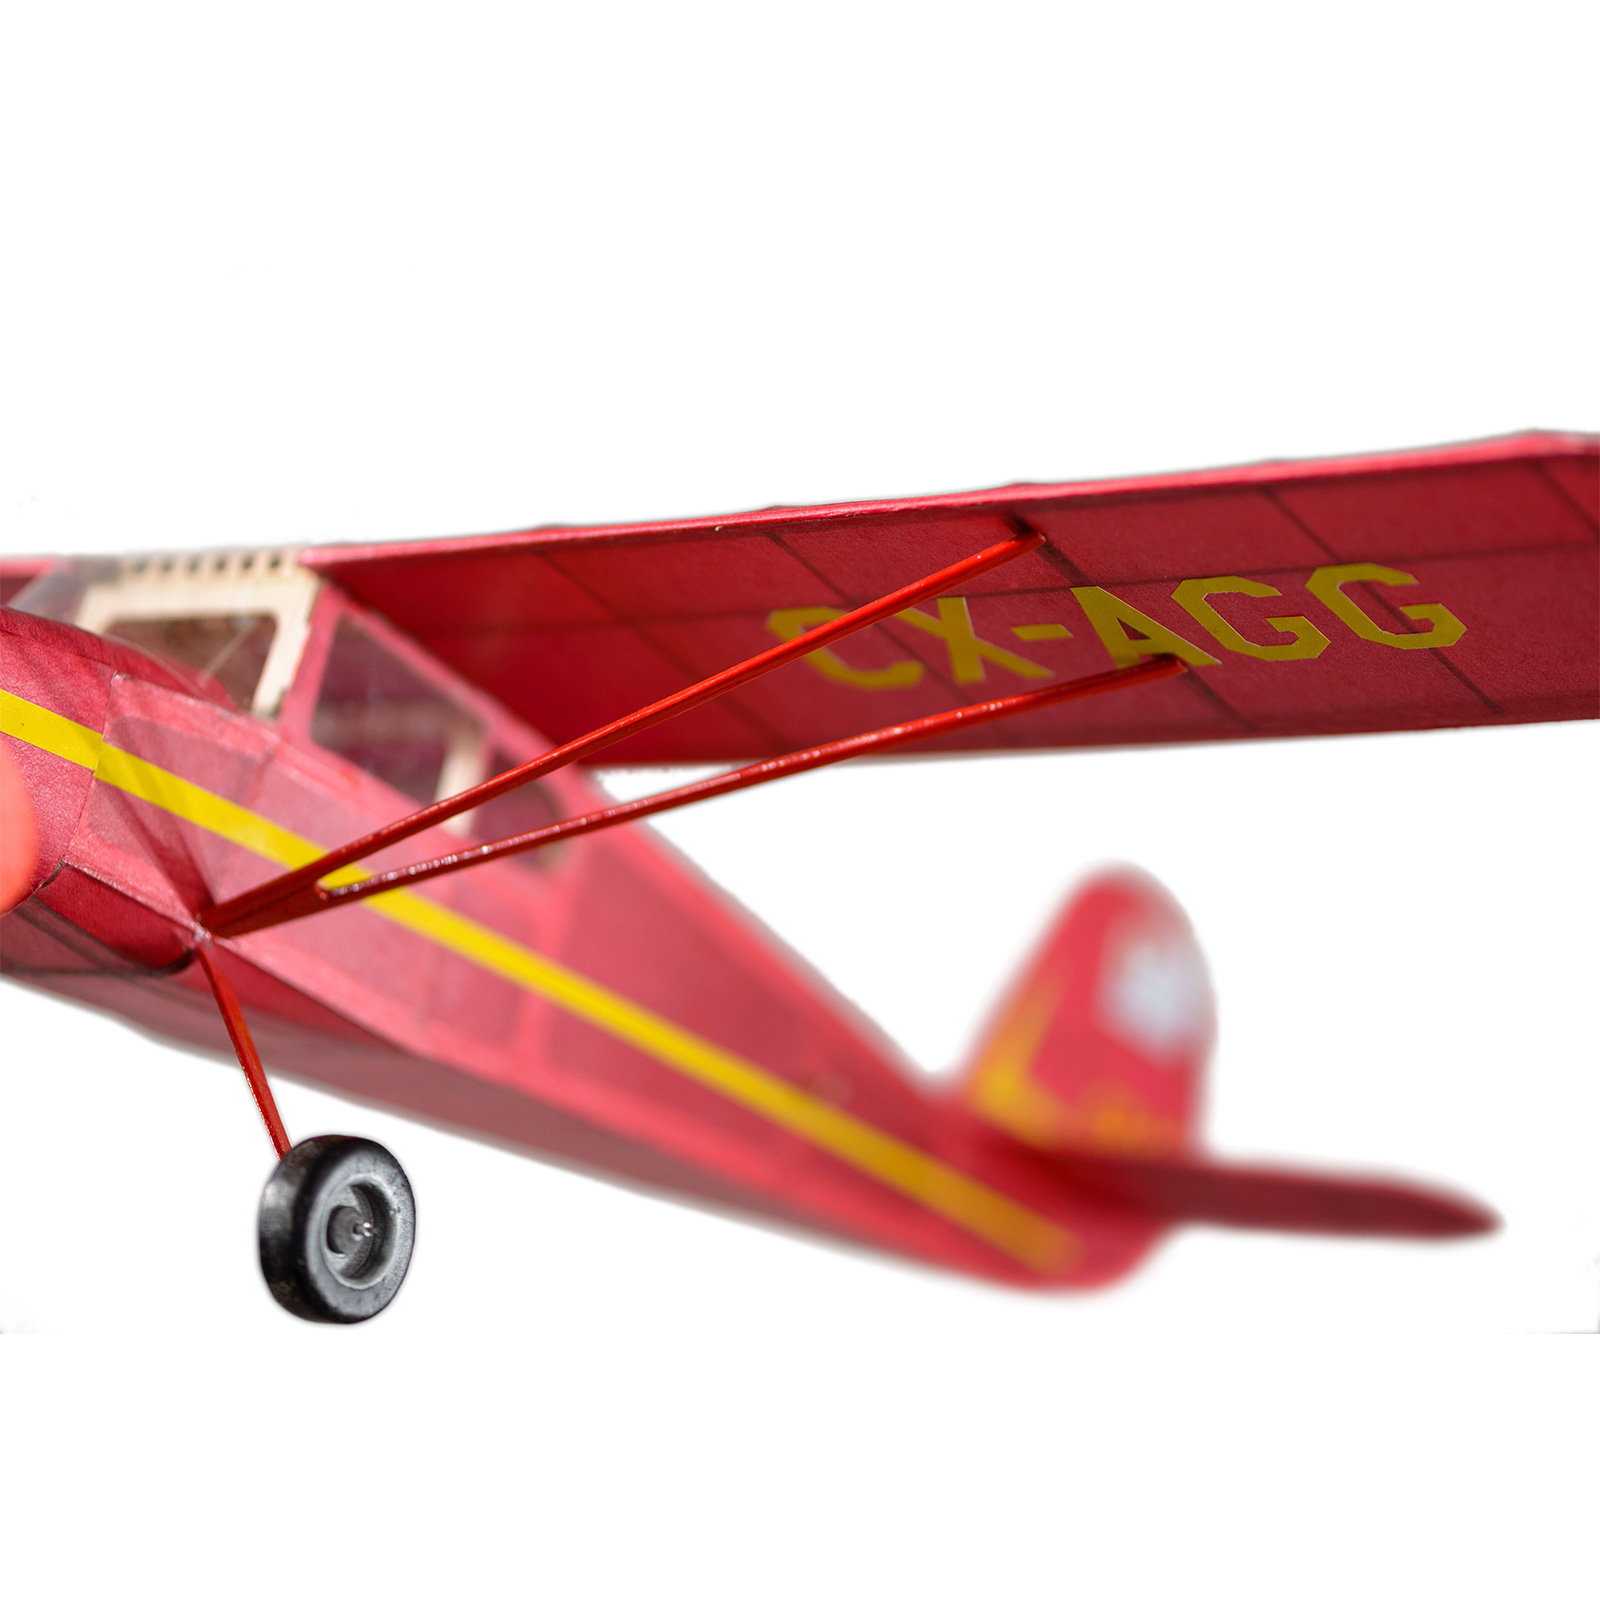 VINTAGE entreprise modèle Balsa Découpe Laser Cessna 140 